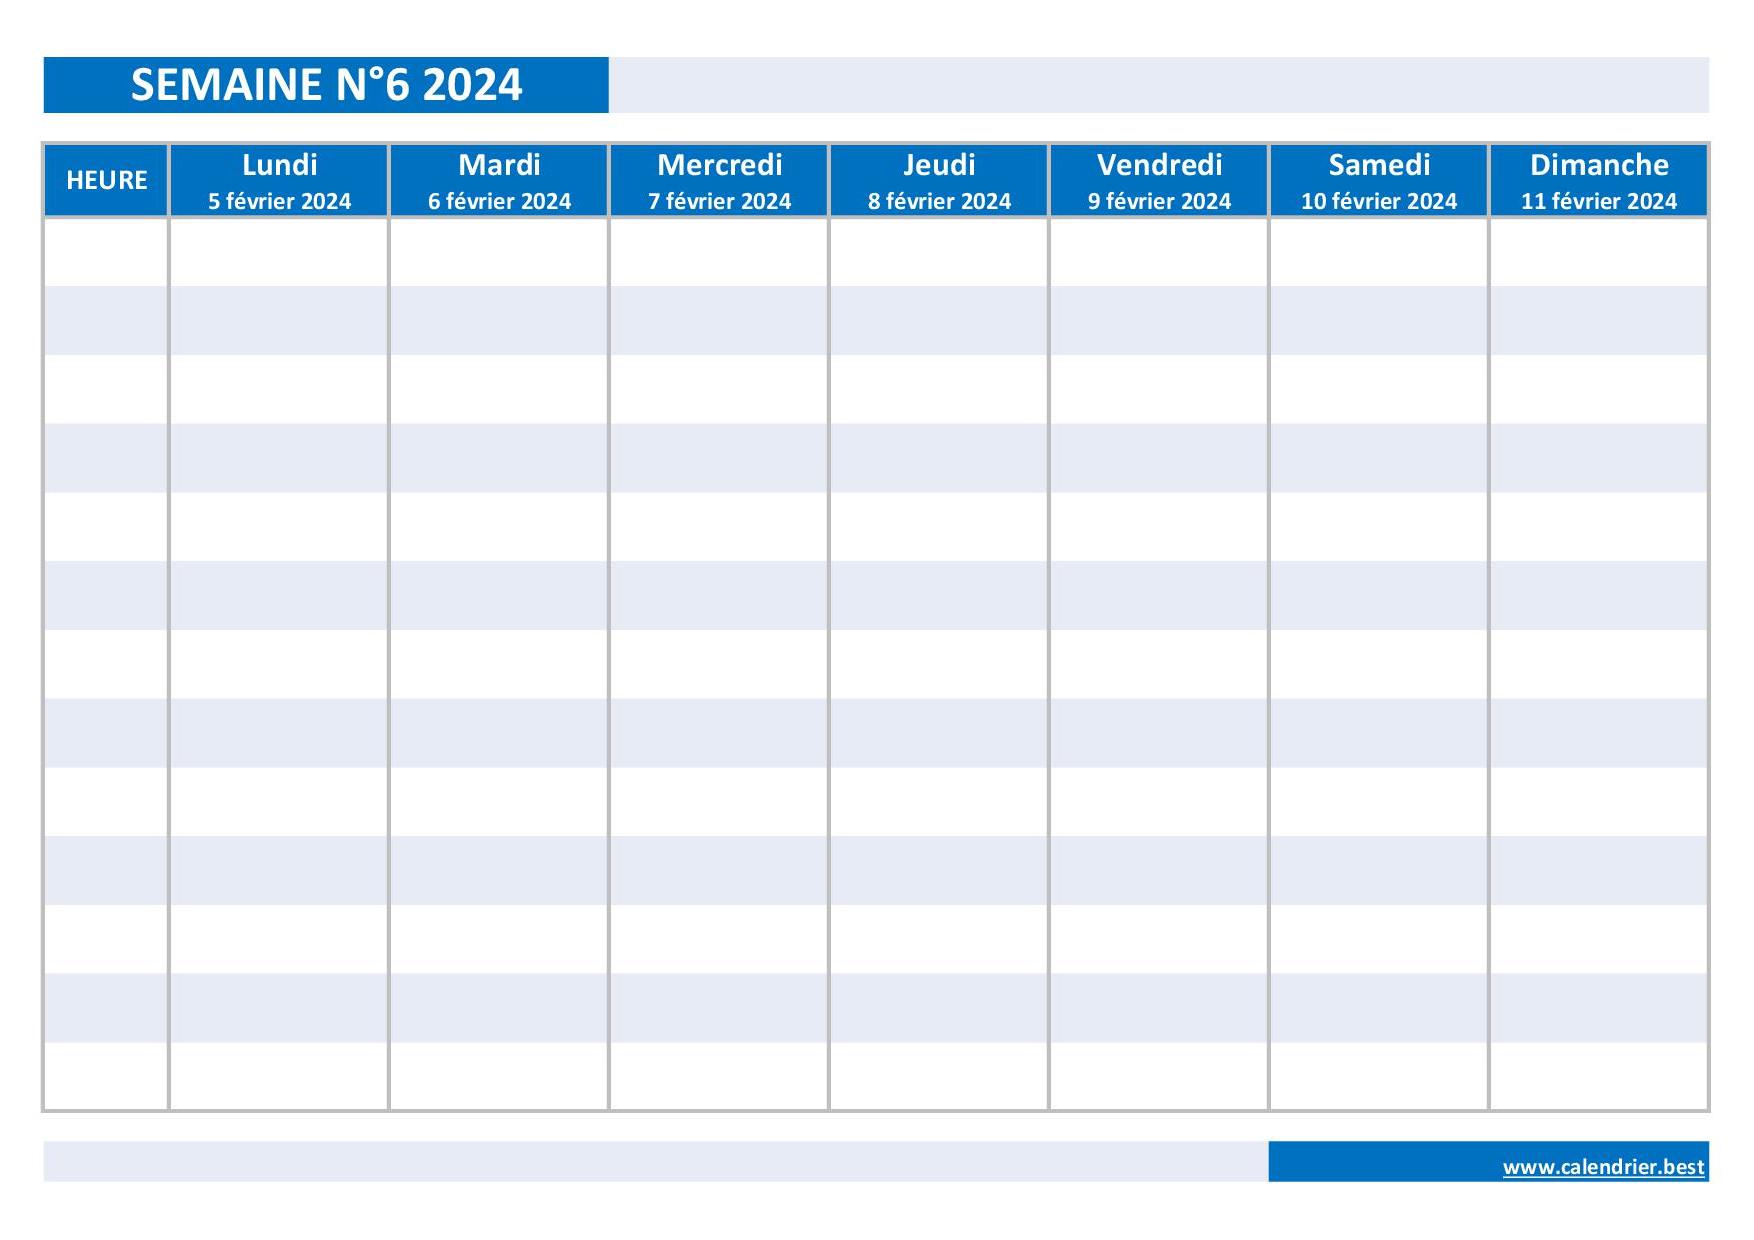 Semaine 6 2024 : dates, calendrier et planning hebdomadaire à imprimer